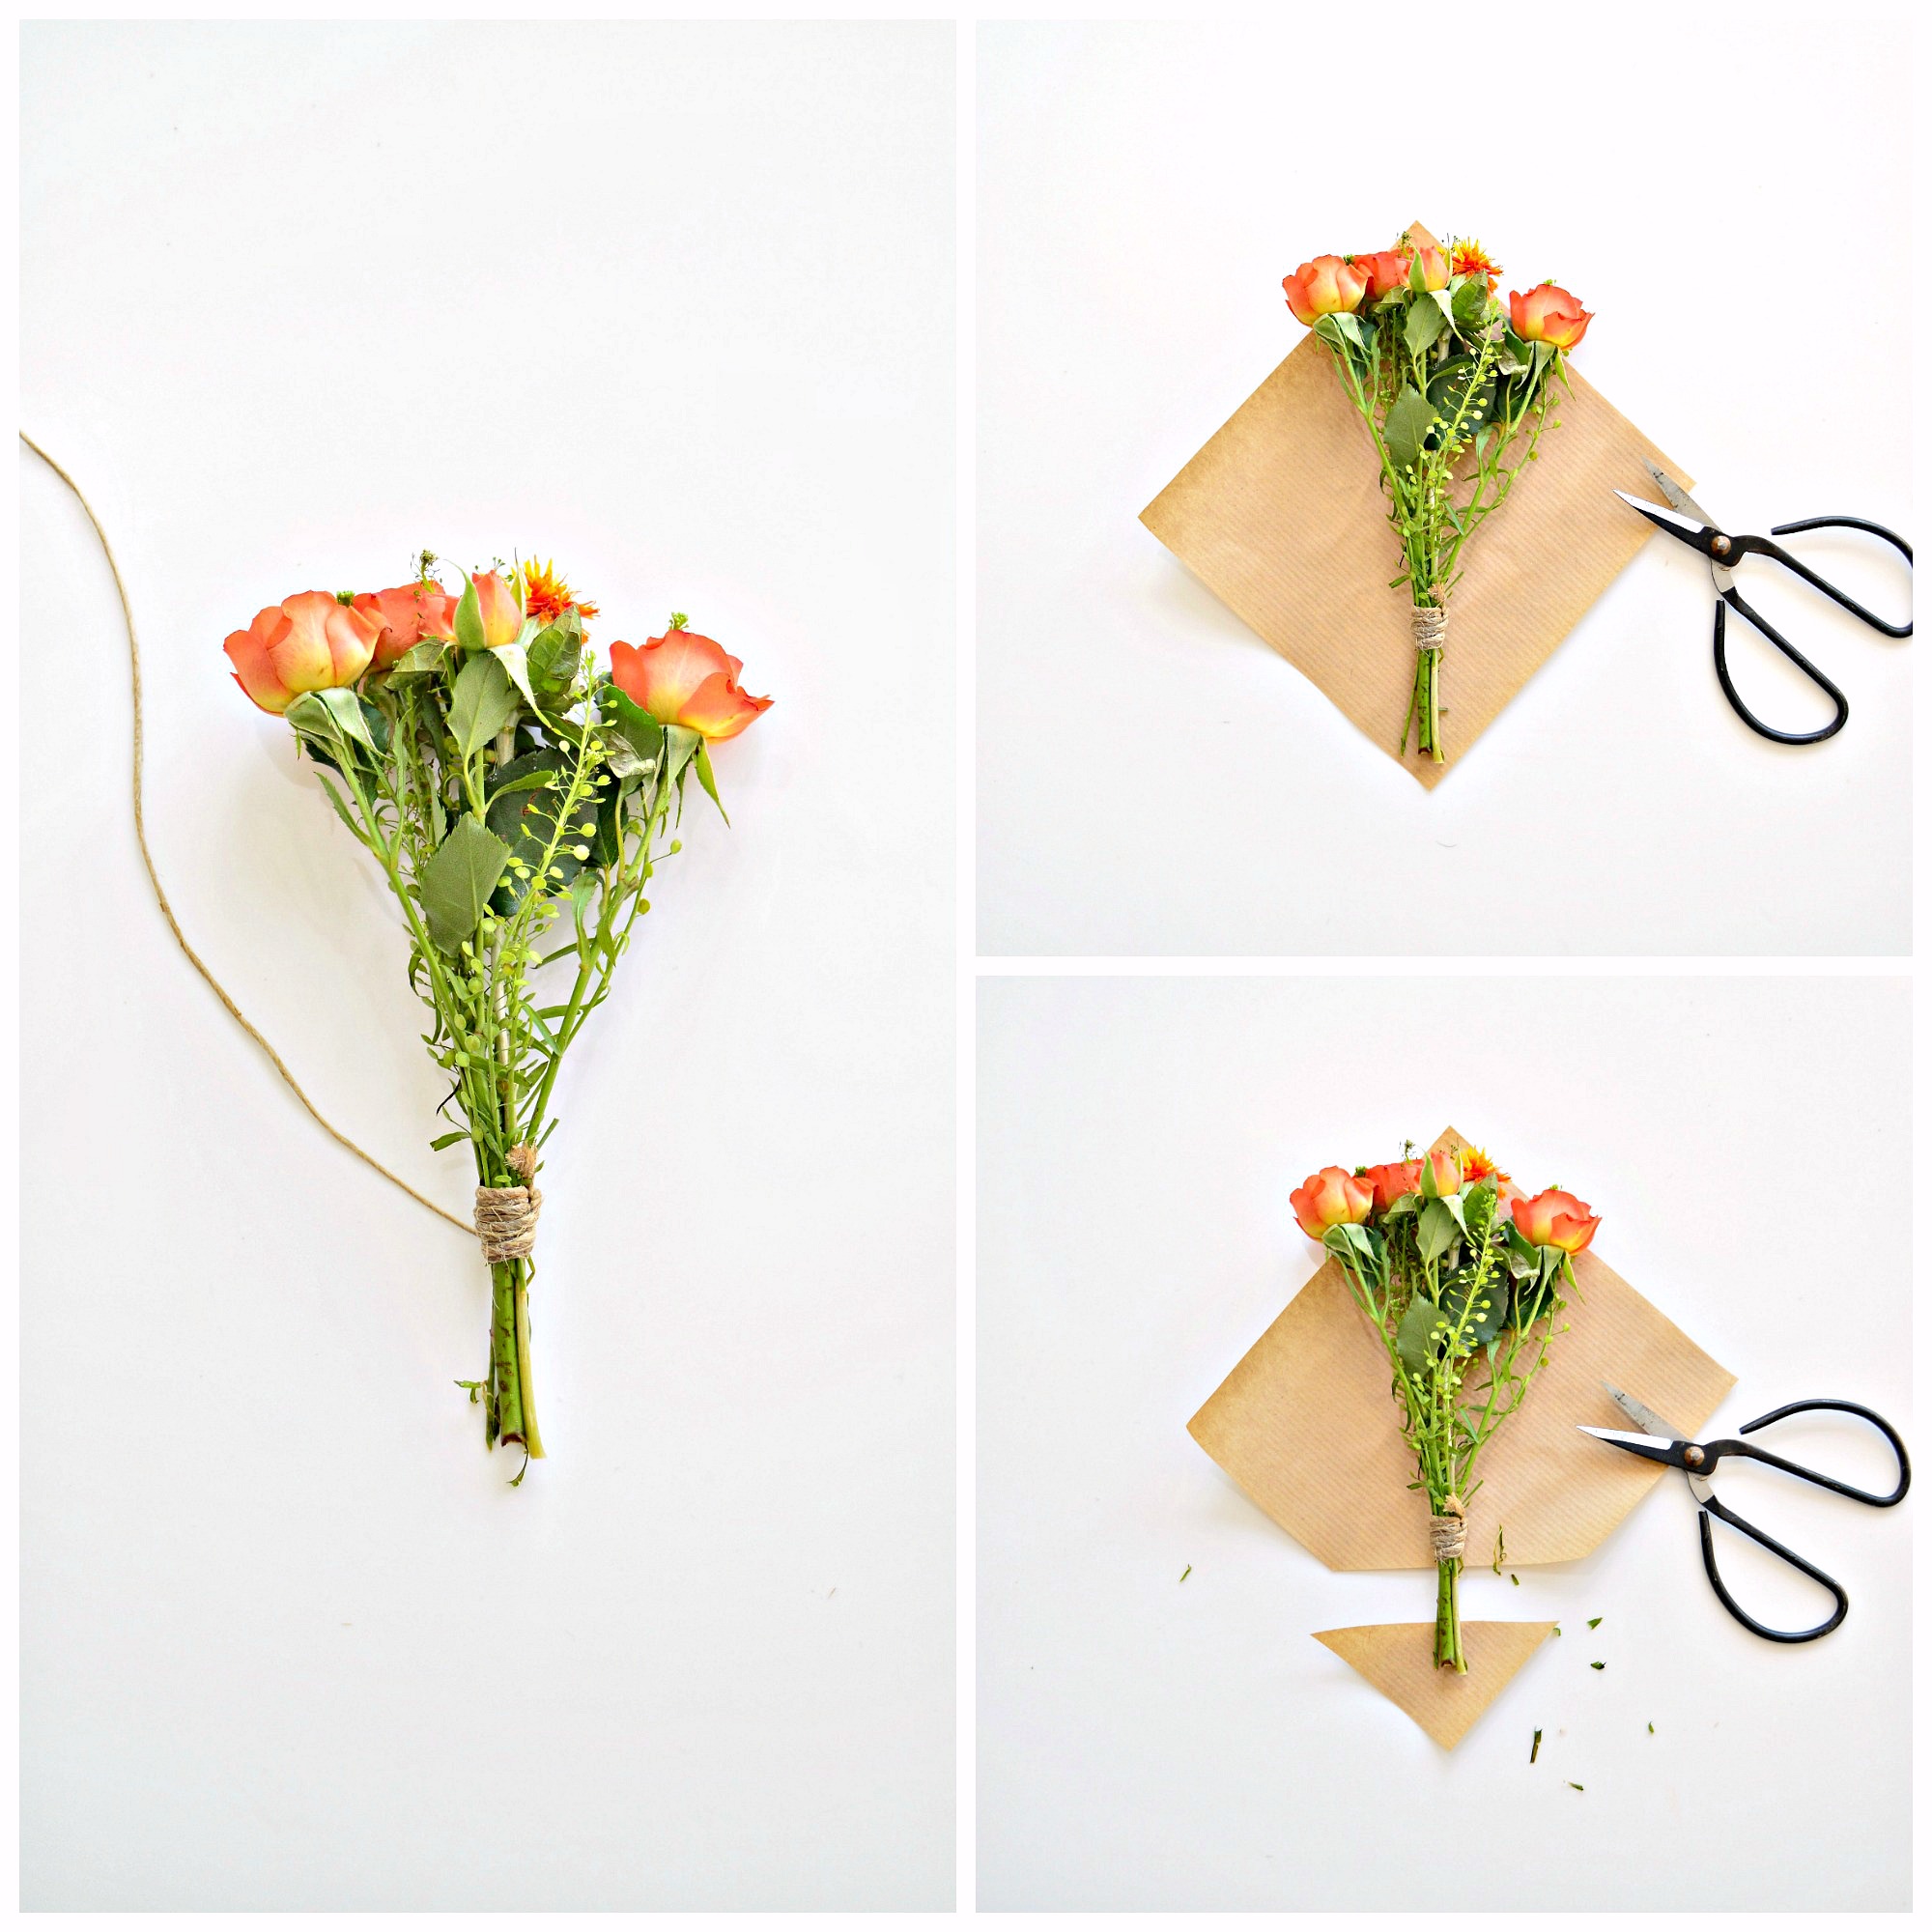 Упаковка цветов в бумагу пошагово для начинающих фото пошагово